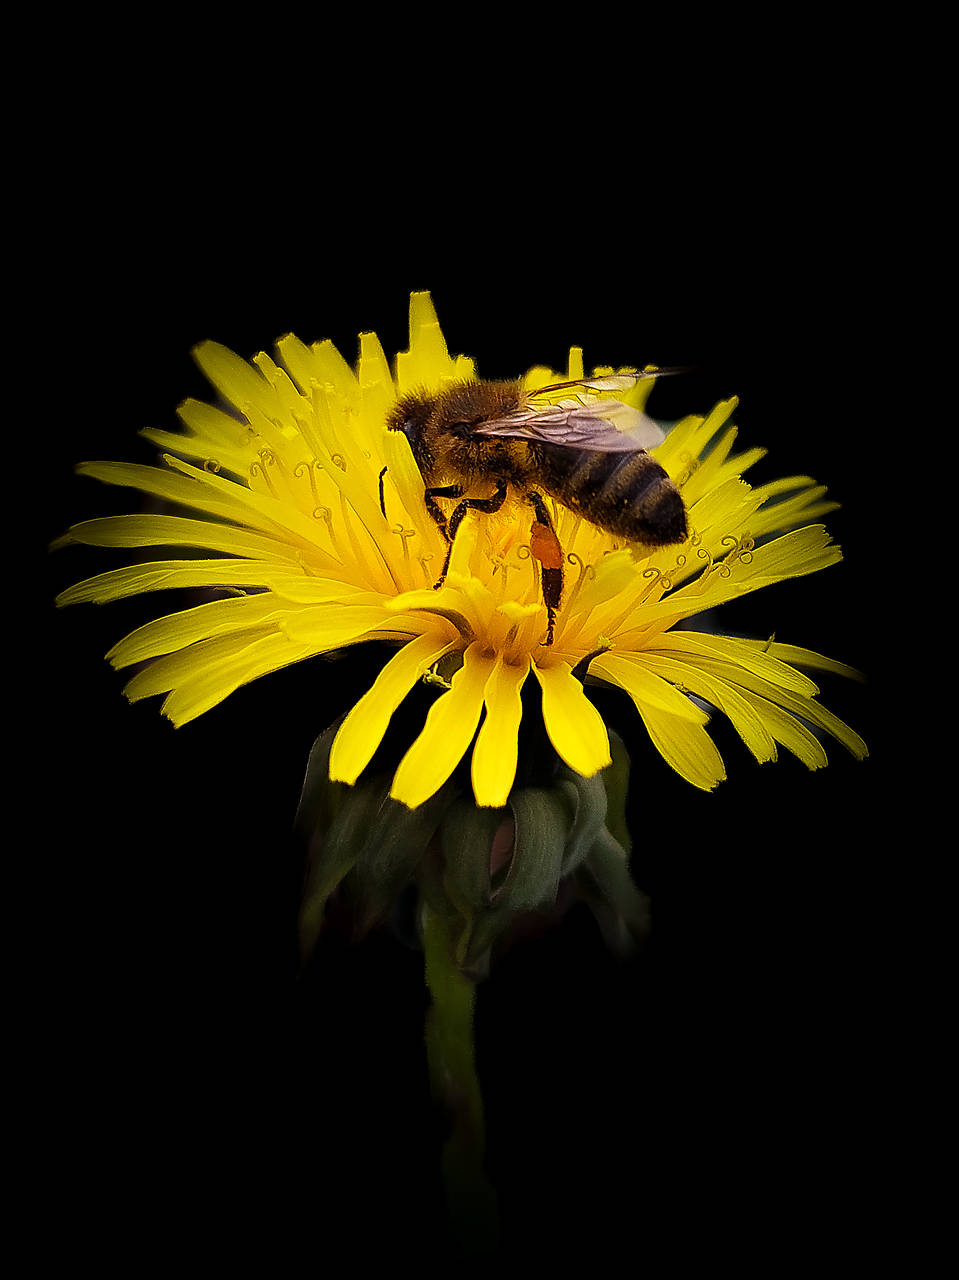 Originálna print fotografia - Krásna včela ( Apis mellifera )